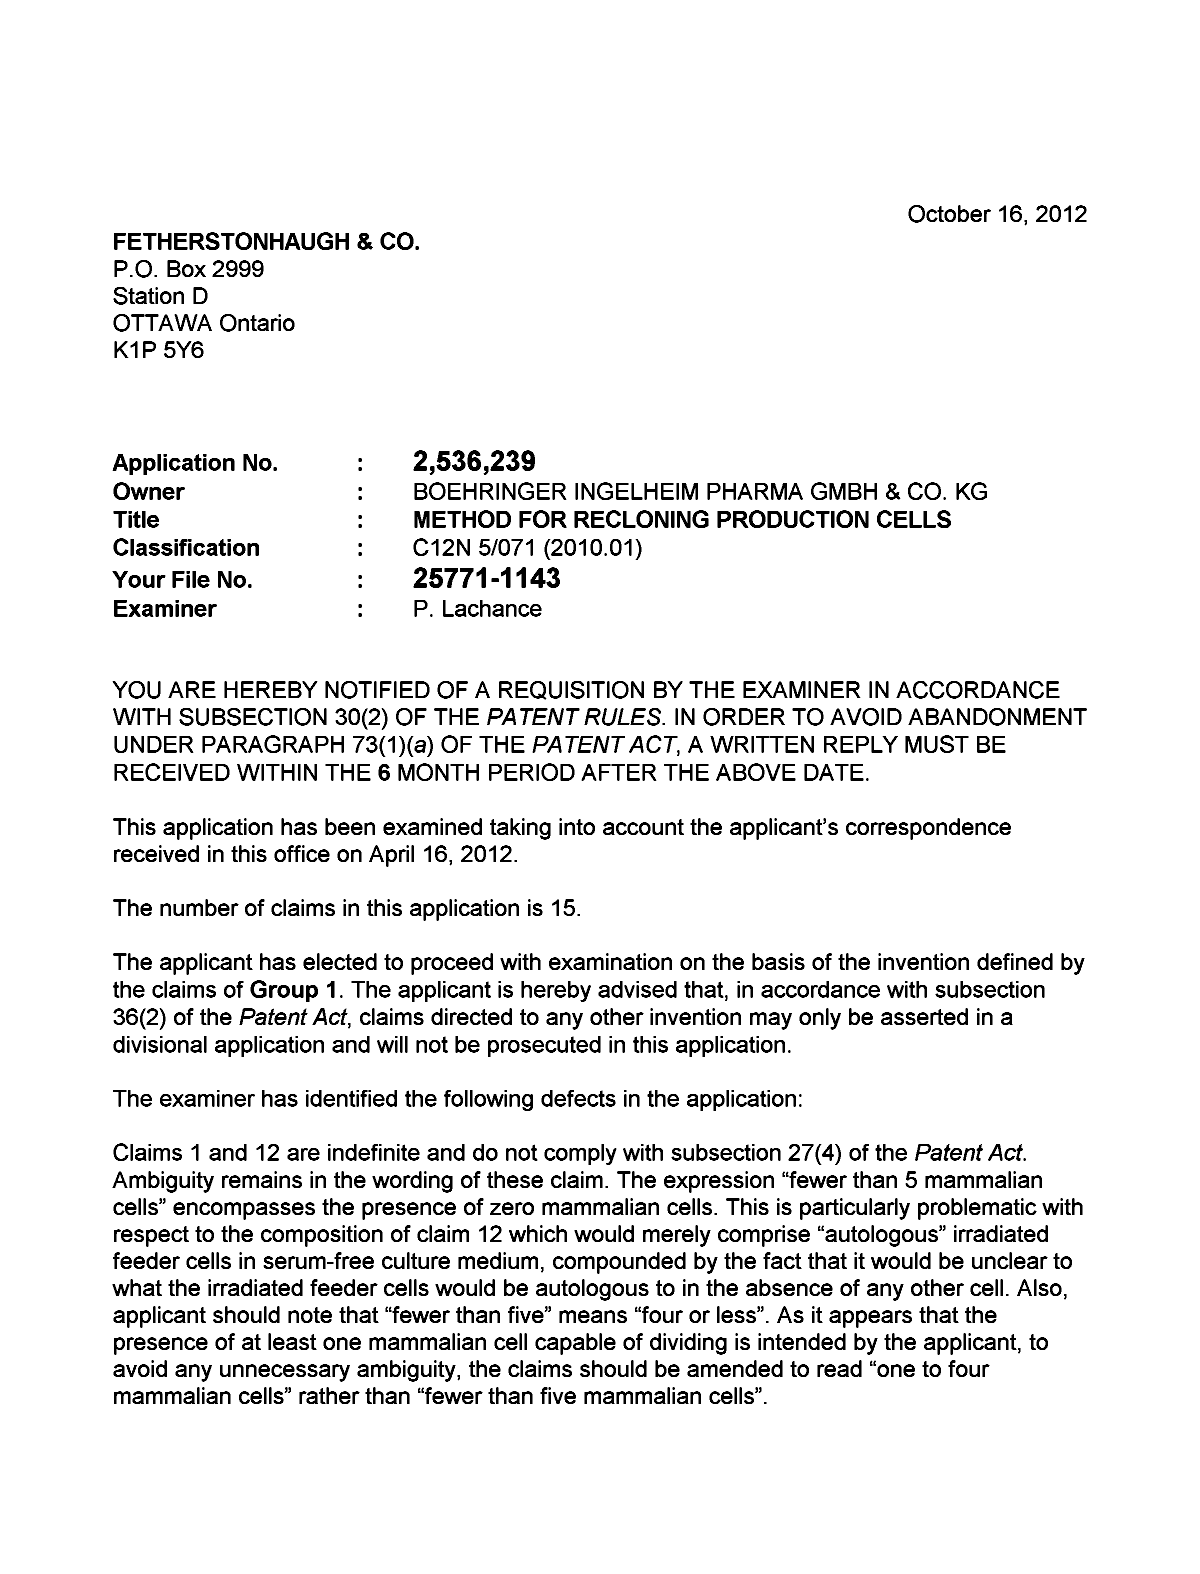 Document de brevet canadien 2536239. Poursuite-Amendment 20121016. Image 1 de 2